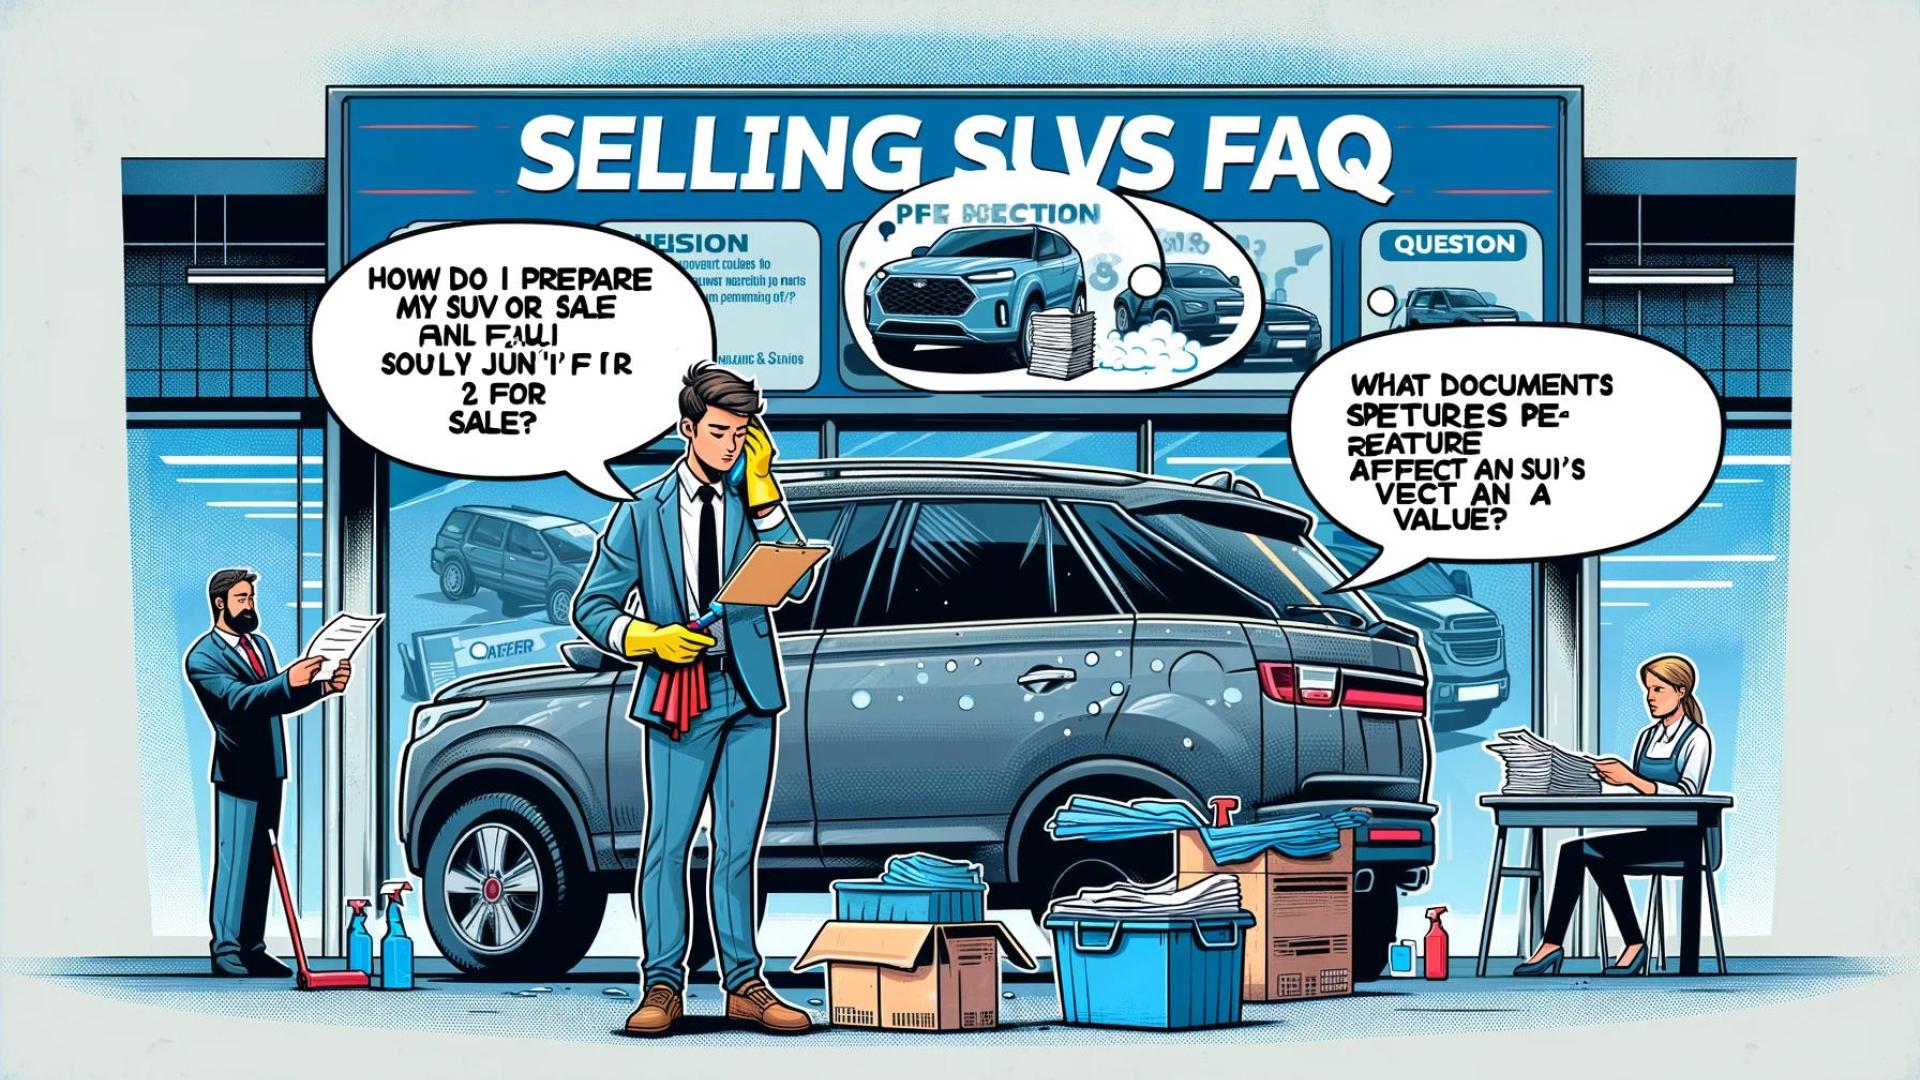 Das Bild repräsentiert eine Illustration der FAQ SUV Geländewagen verkaufen